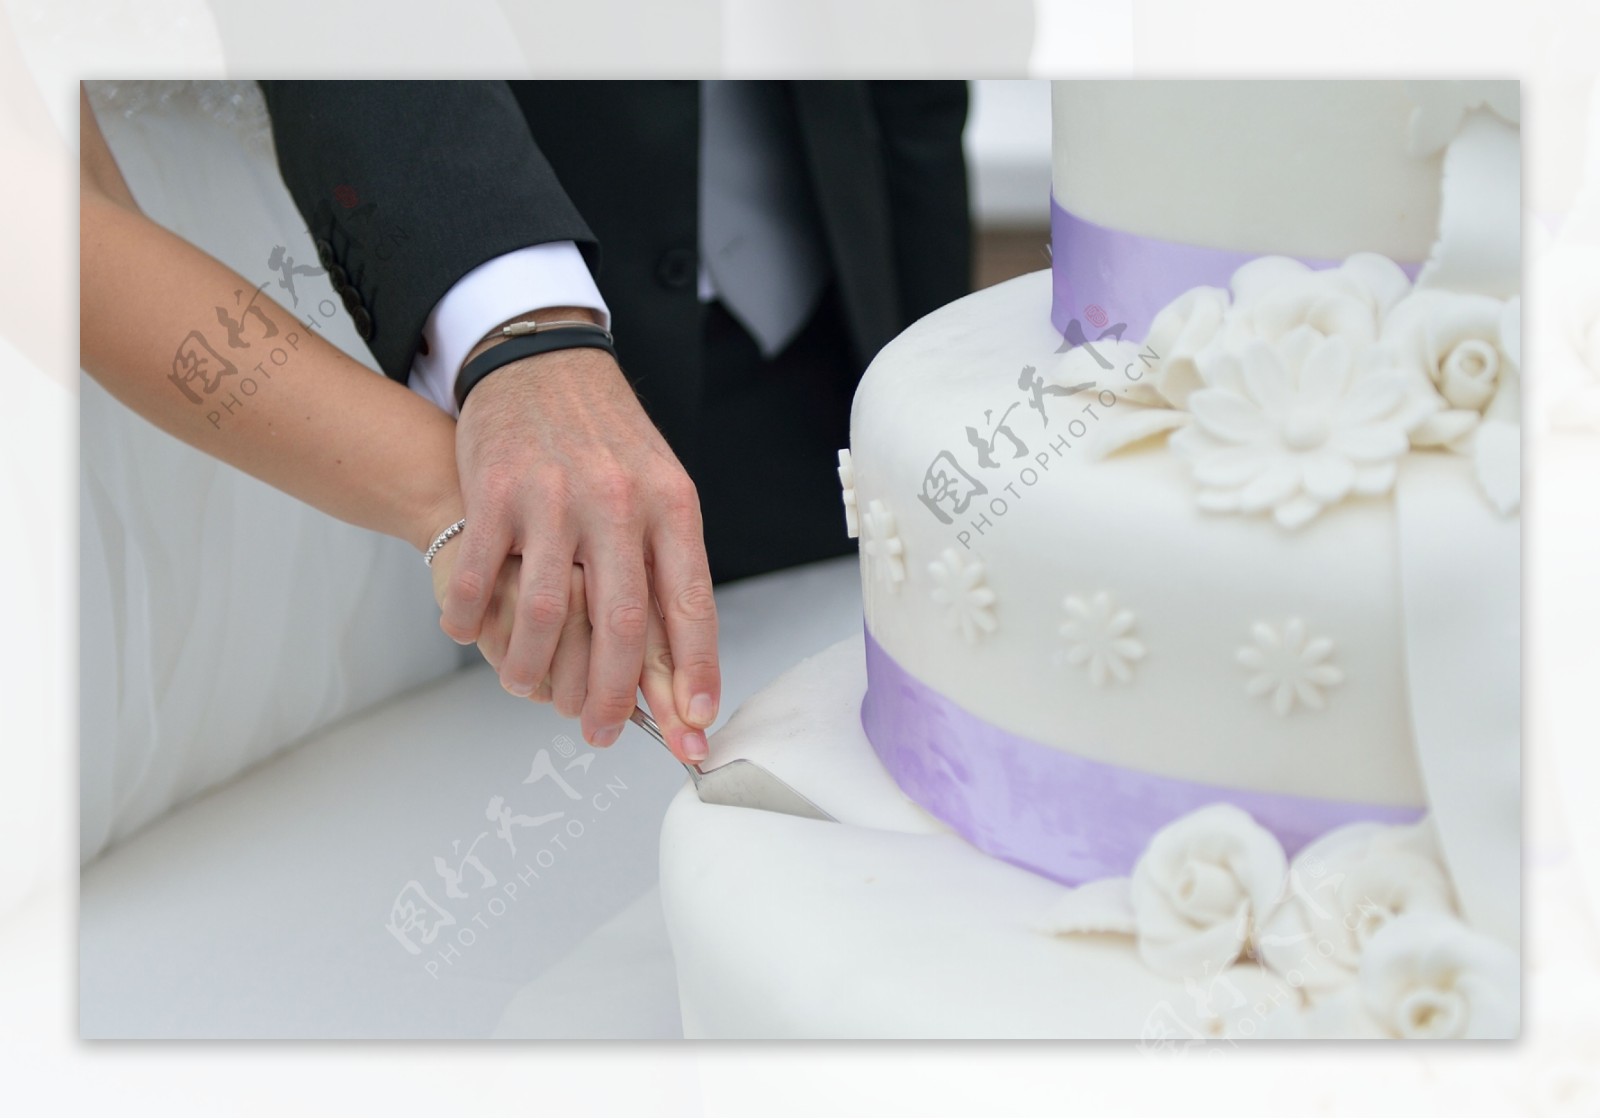 获得最佳切蛋糕婚礼照片的 3 个技巧：粉碎还是不粉碎？ | Wedding Photojournalist Association